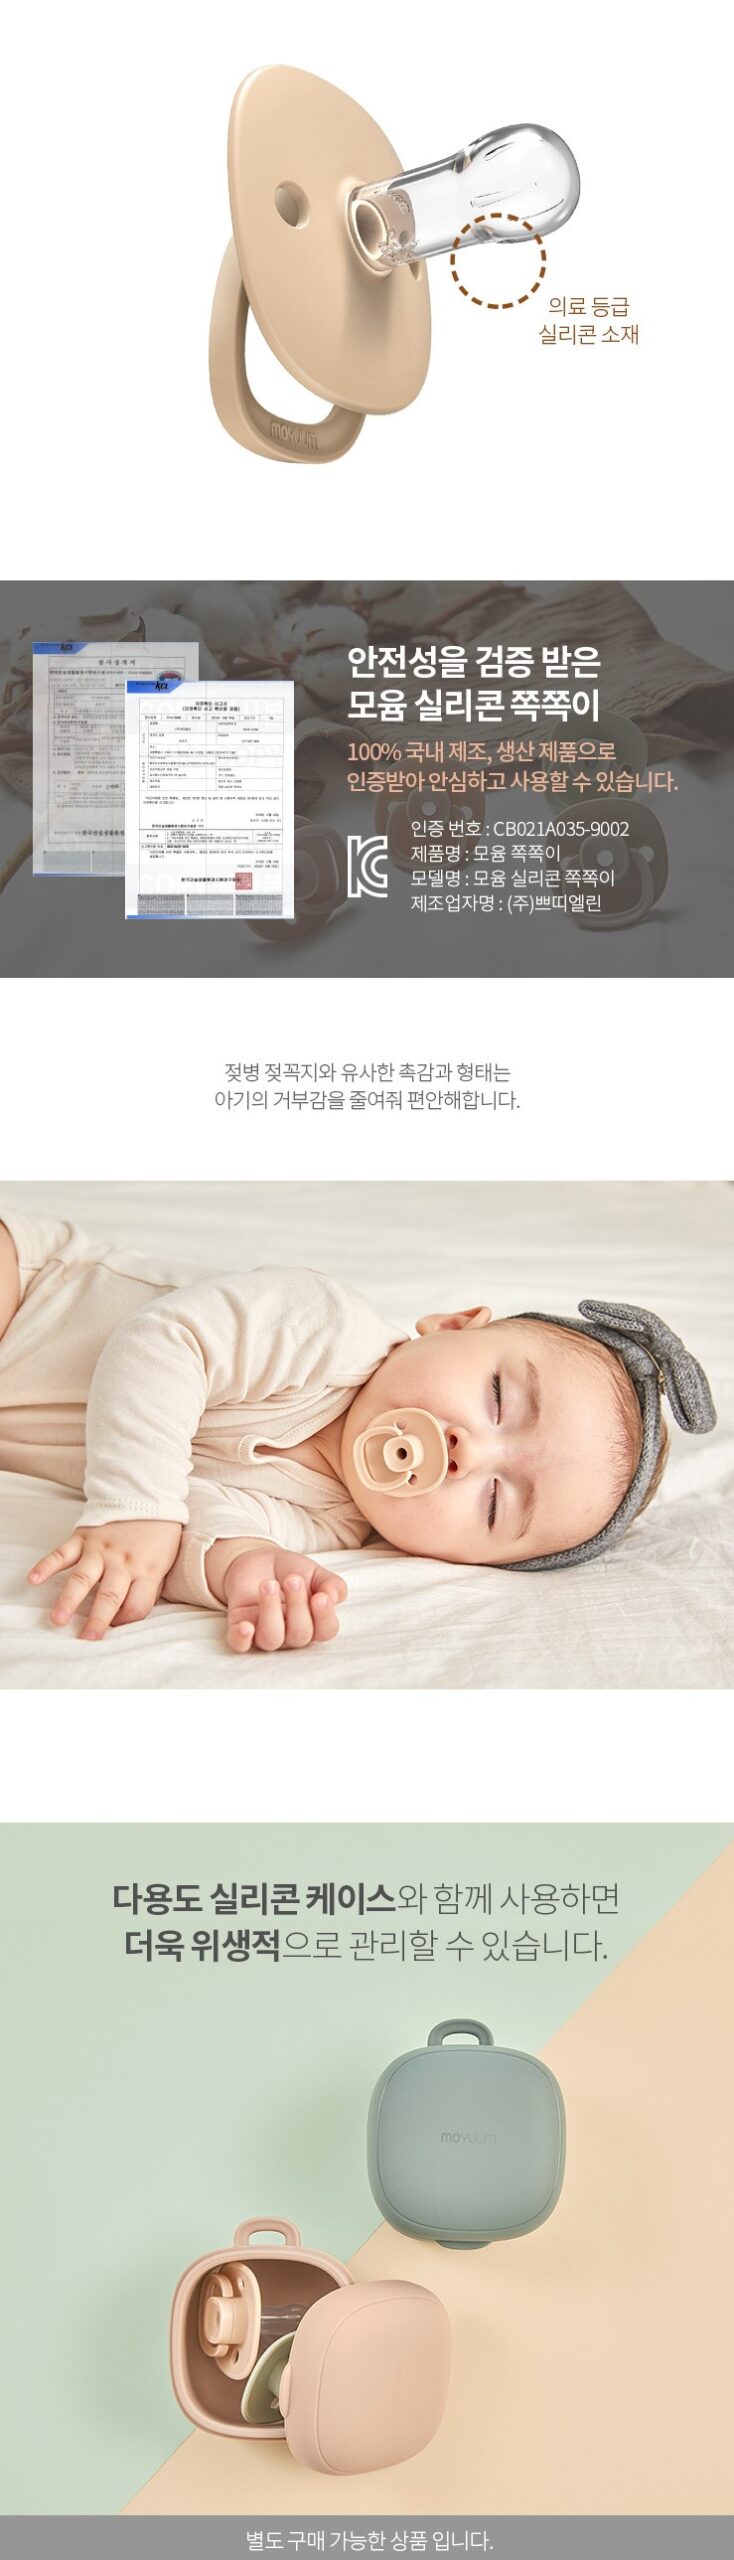 韓國食品-[Moyuum] 矽膠奶嘴 (六個月以上) 1ea